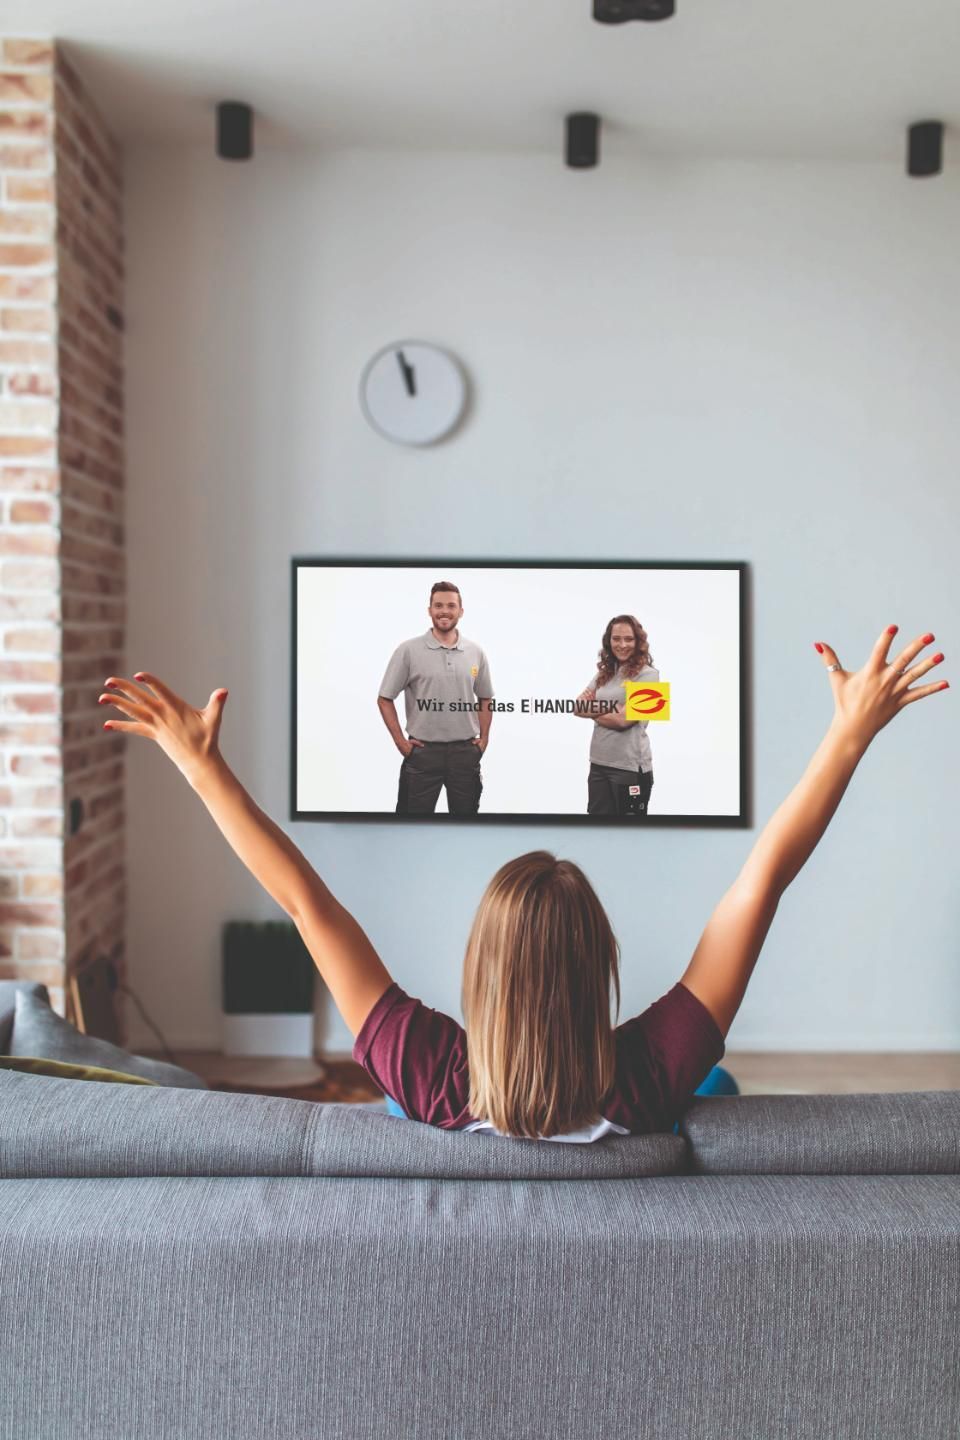 Rückenansicht von auf grauer Couch sitzender braunhaarigen Frau, die beide Arme in die Luft streckt, und auf einen Fernseher mit dem Logo E-Handwerk blickt